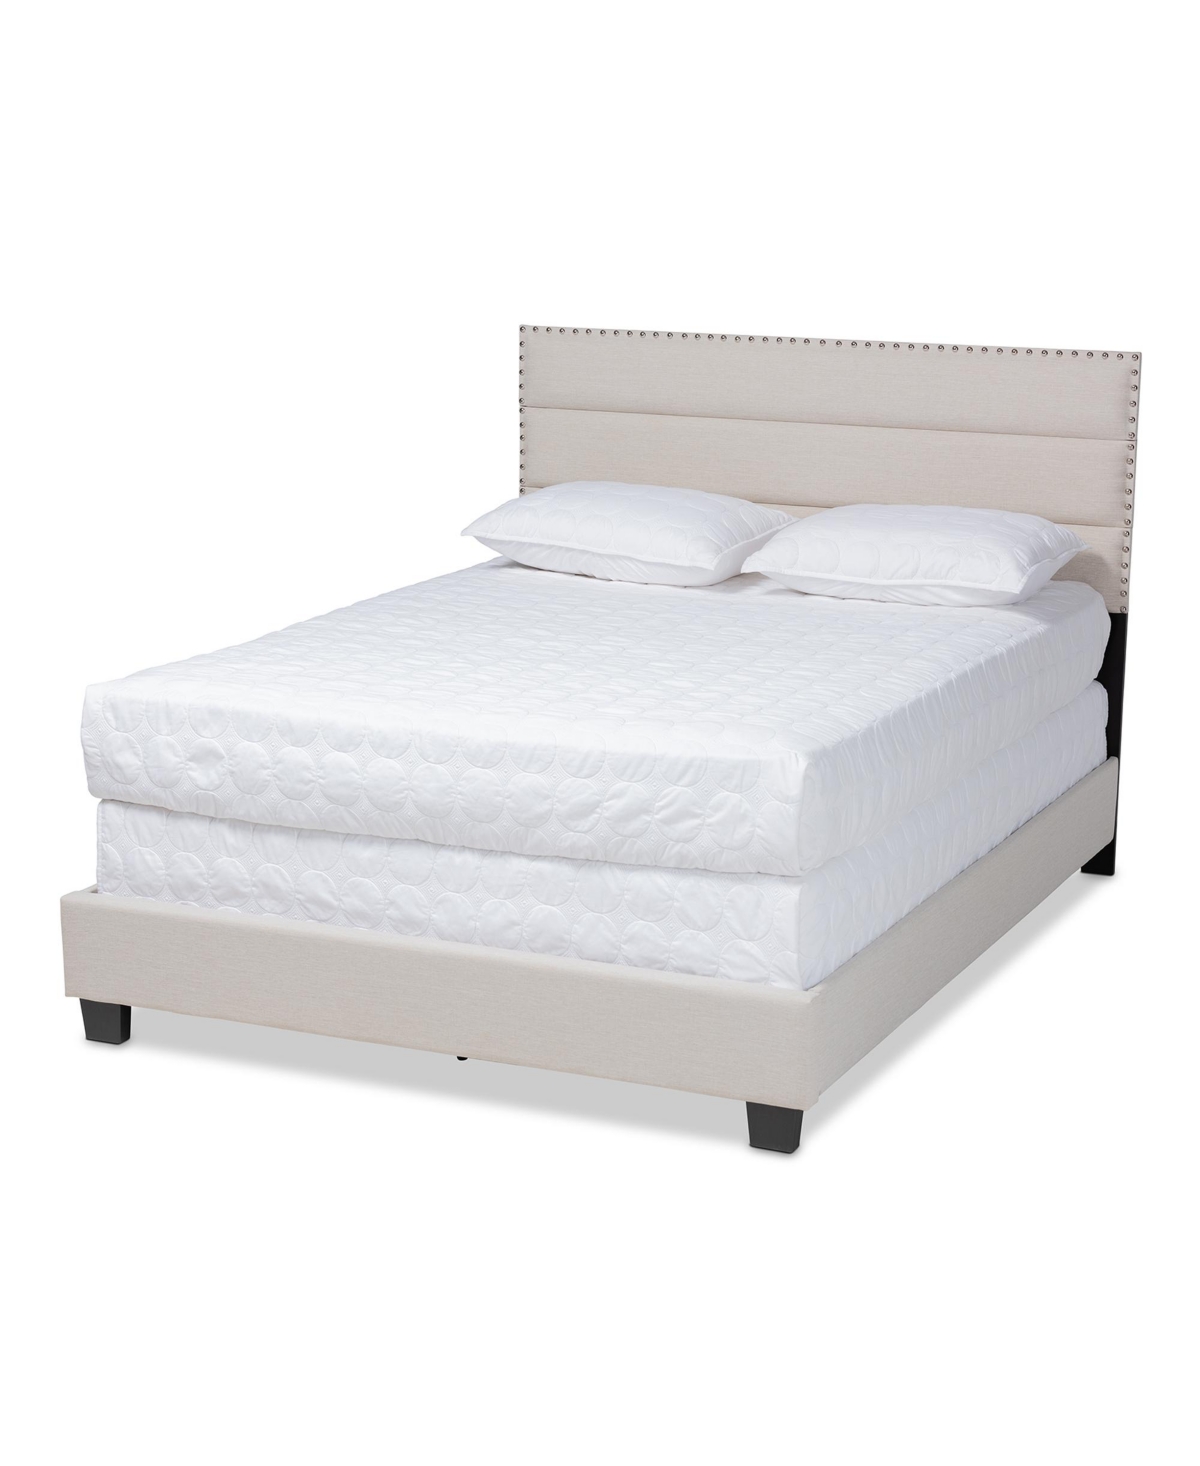 Ansa Fabric Headboard Platform Queen Size Bed